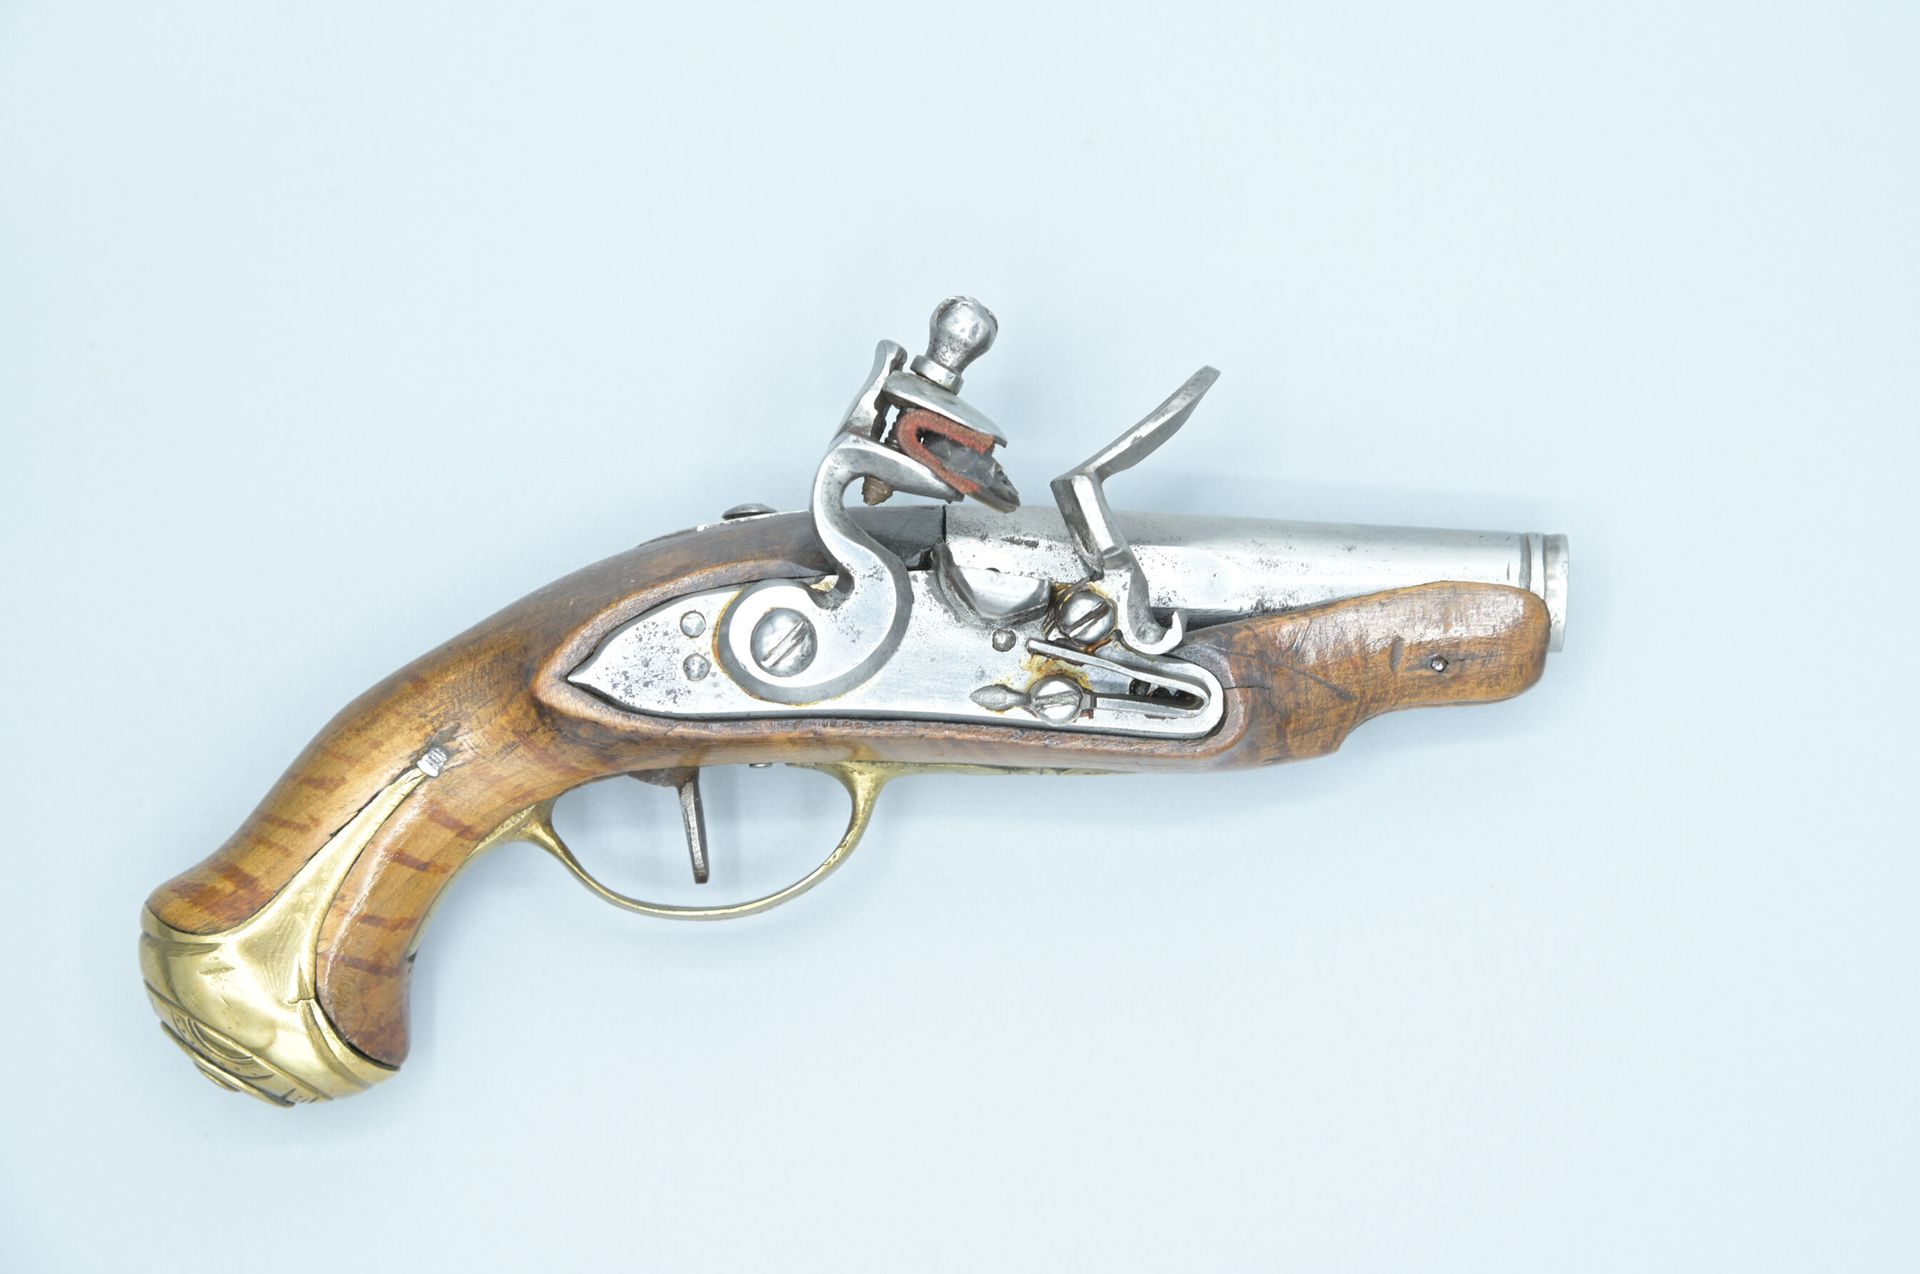 Null 马车枪。燧发枪和平身锁。圆形枪管。胡桃木长枪（略有缺失）。轻微雕刻的黄铜配件。功能性机制。路易十五-路易十六时期。长度：17厘米